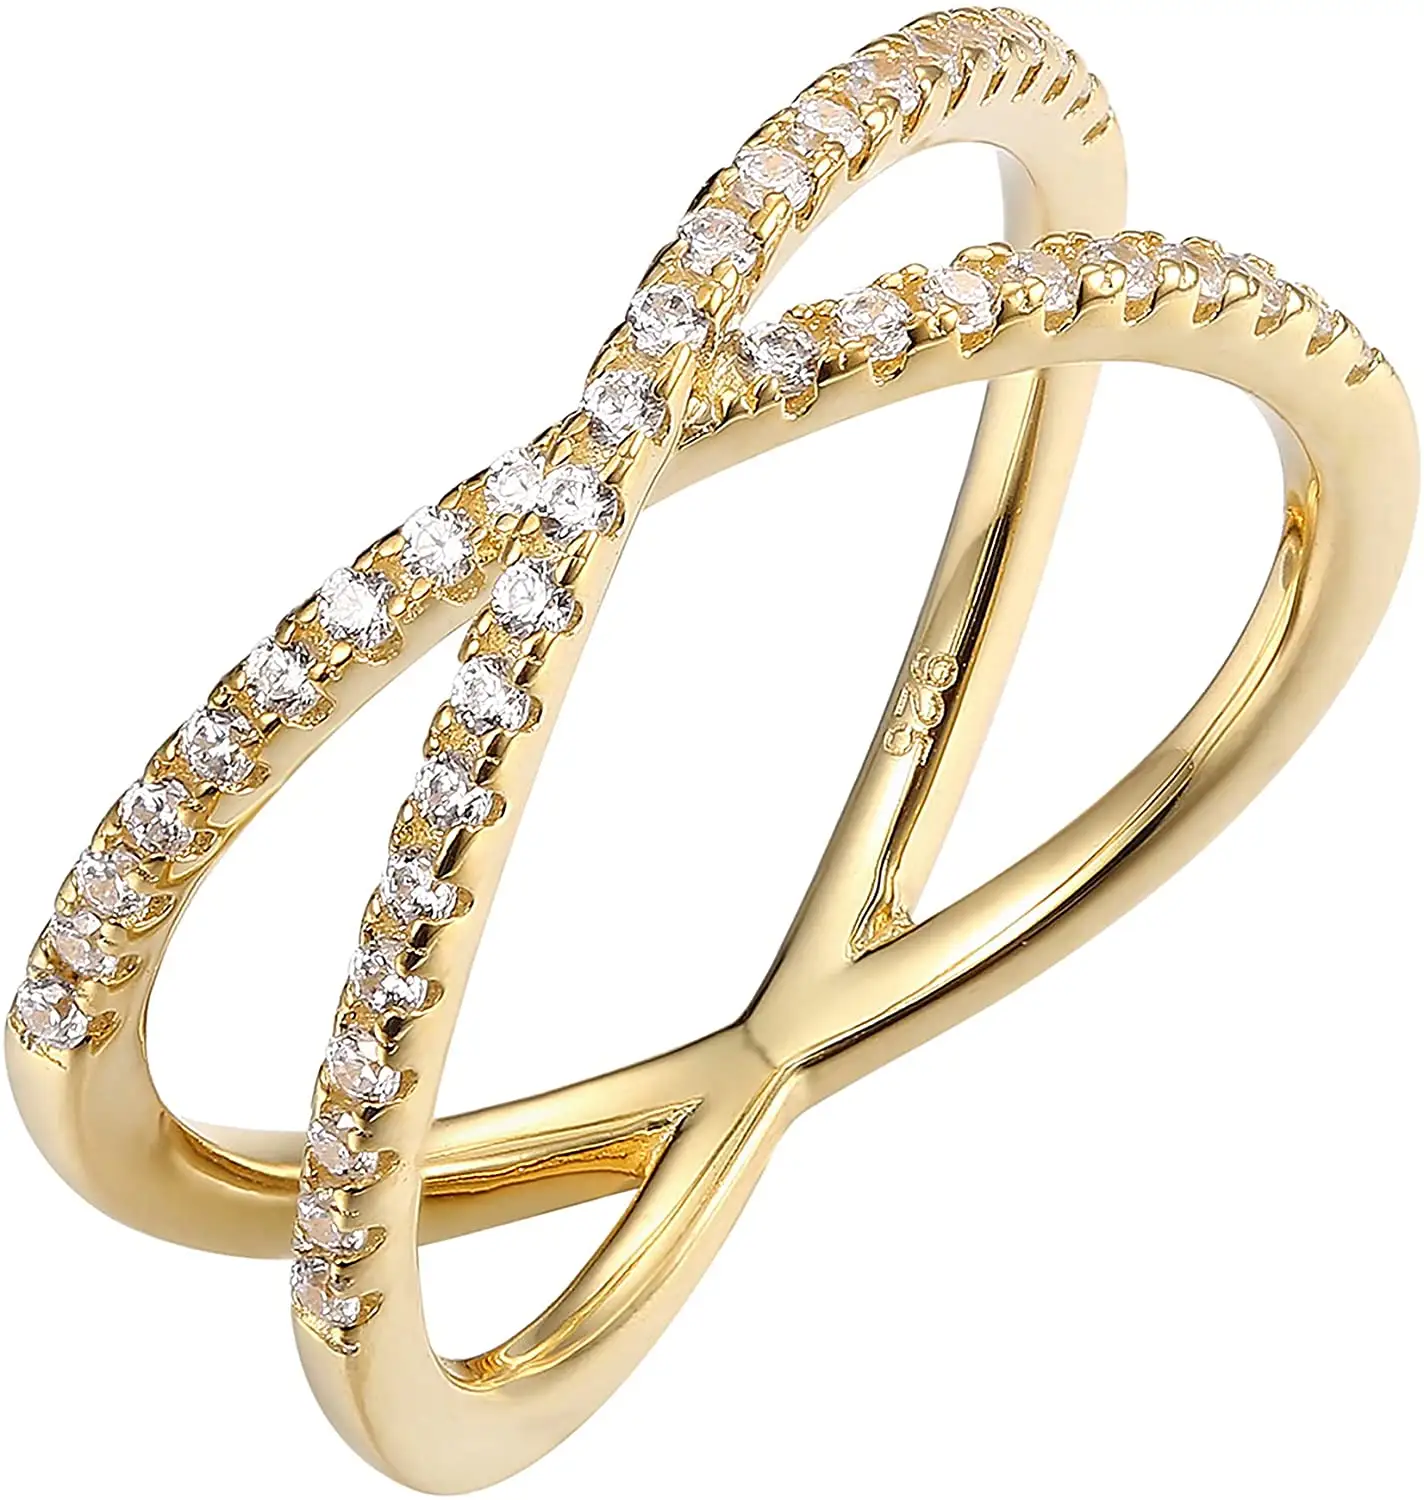 Women Rings European And American Cross-border E-commerce X Ring Diamond Cross Ring Women's